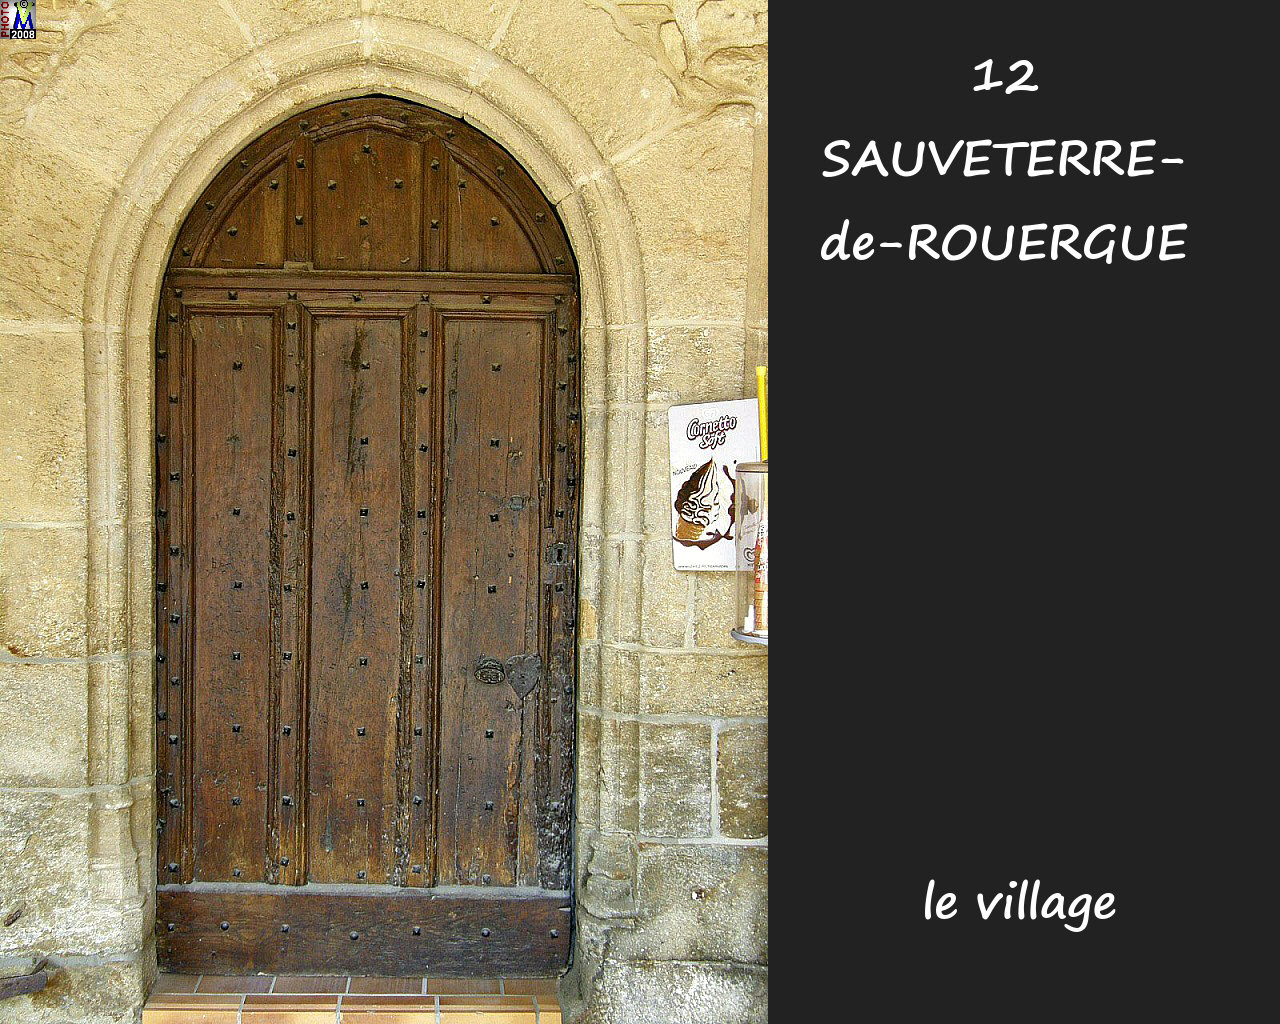 12SAUVETERRE-ROUERGUE_village_190.jpg